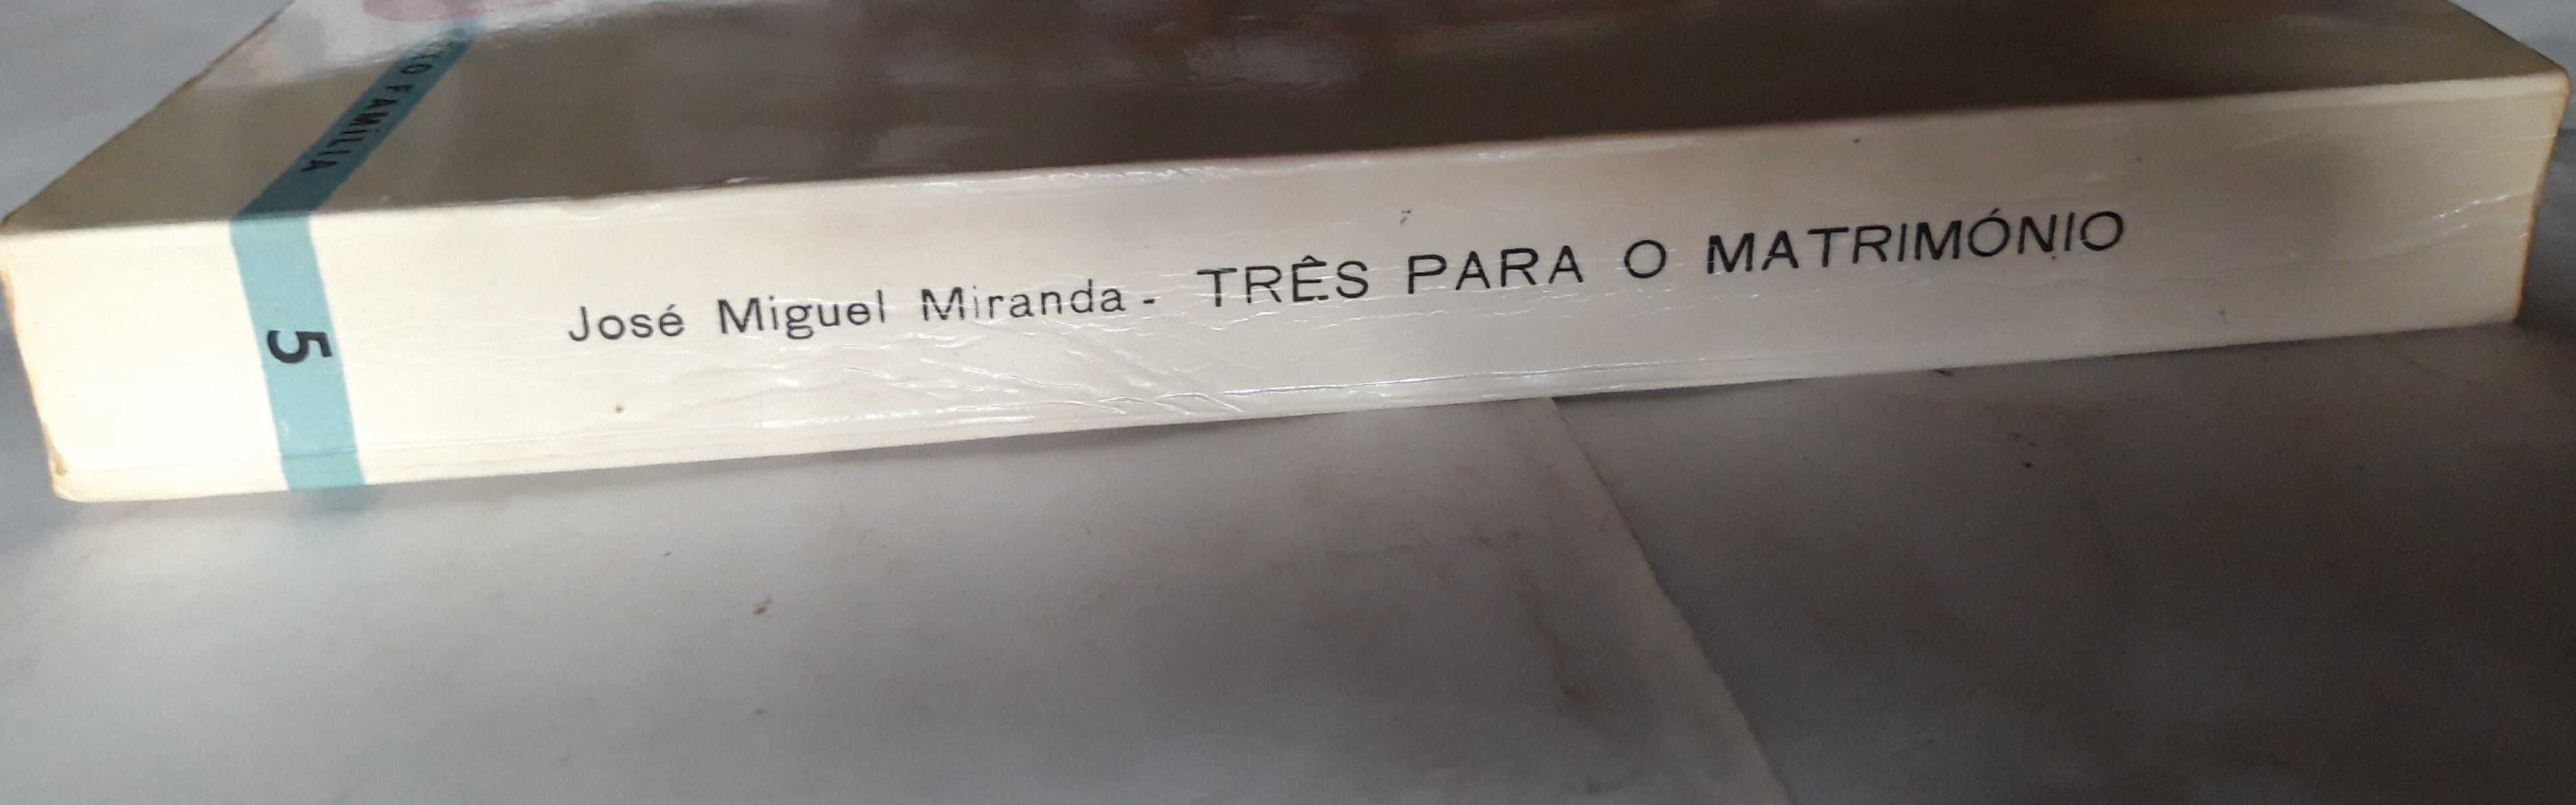 Livro PAR1 - José Miguel Miranda - Três Para o Matrimónio